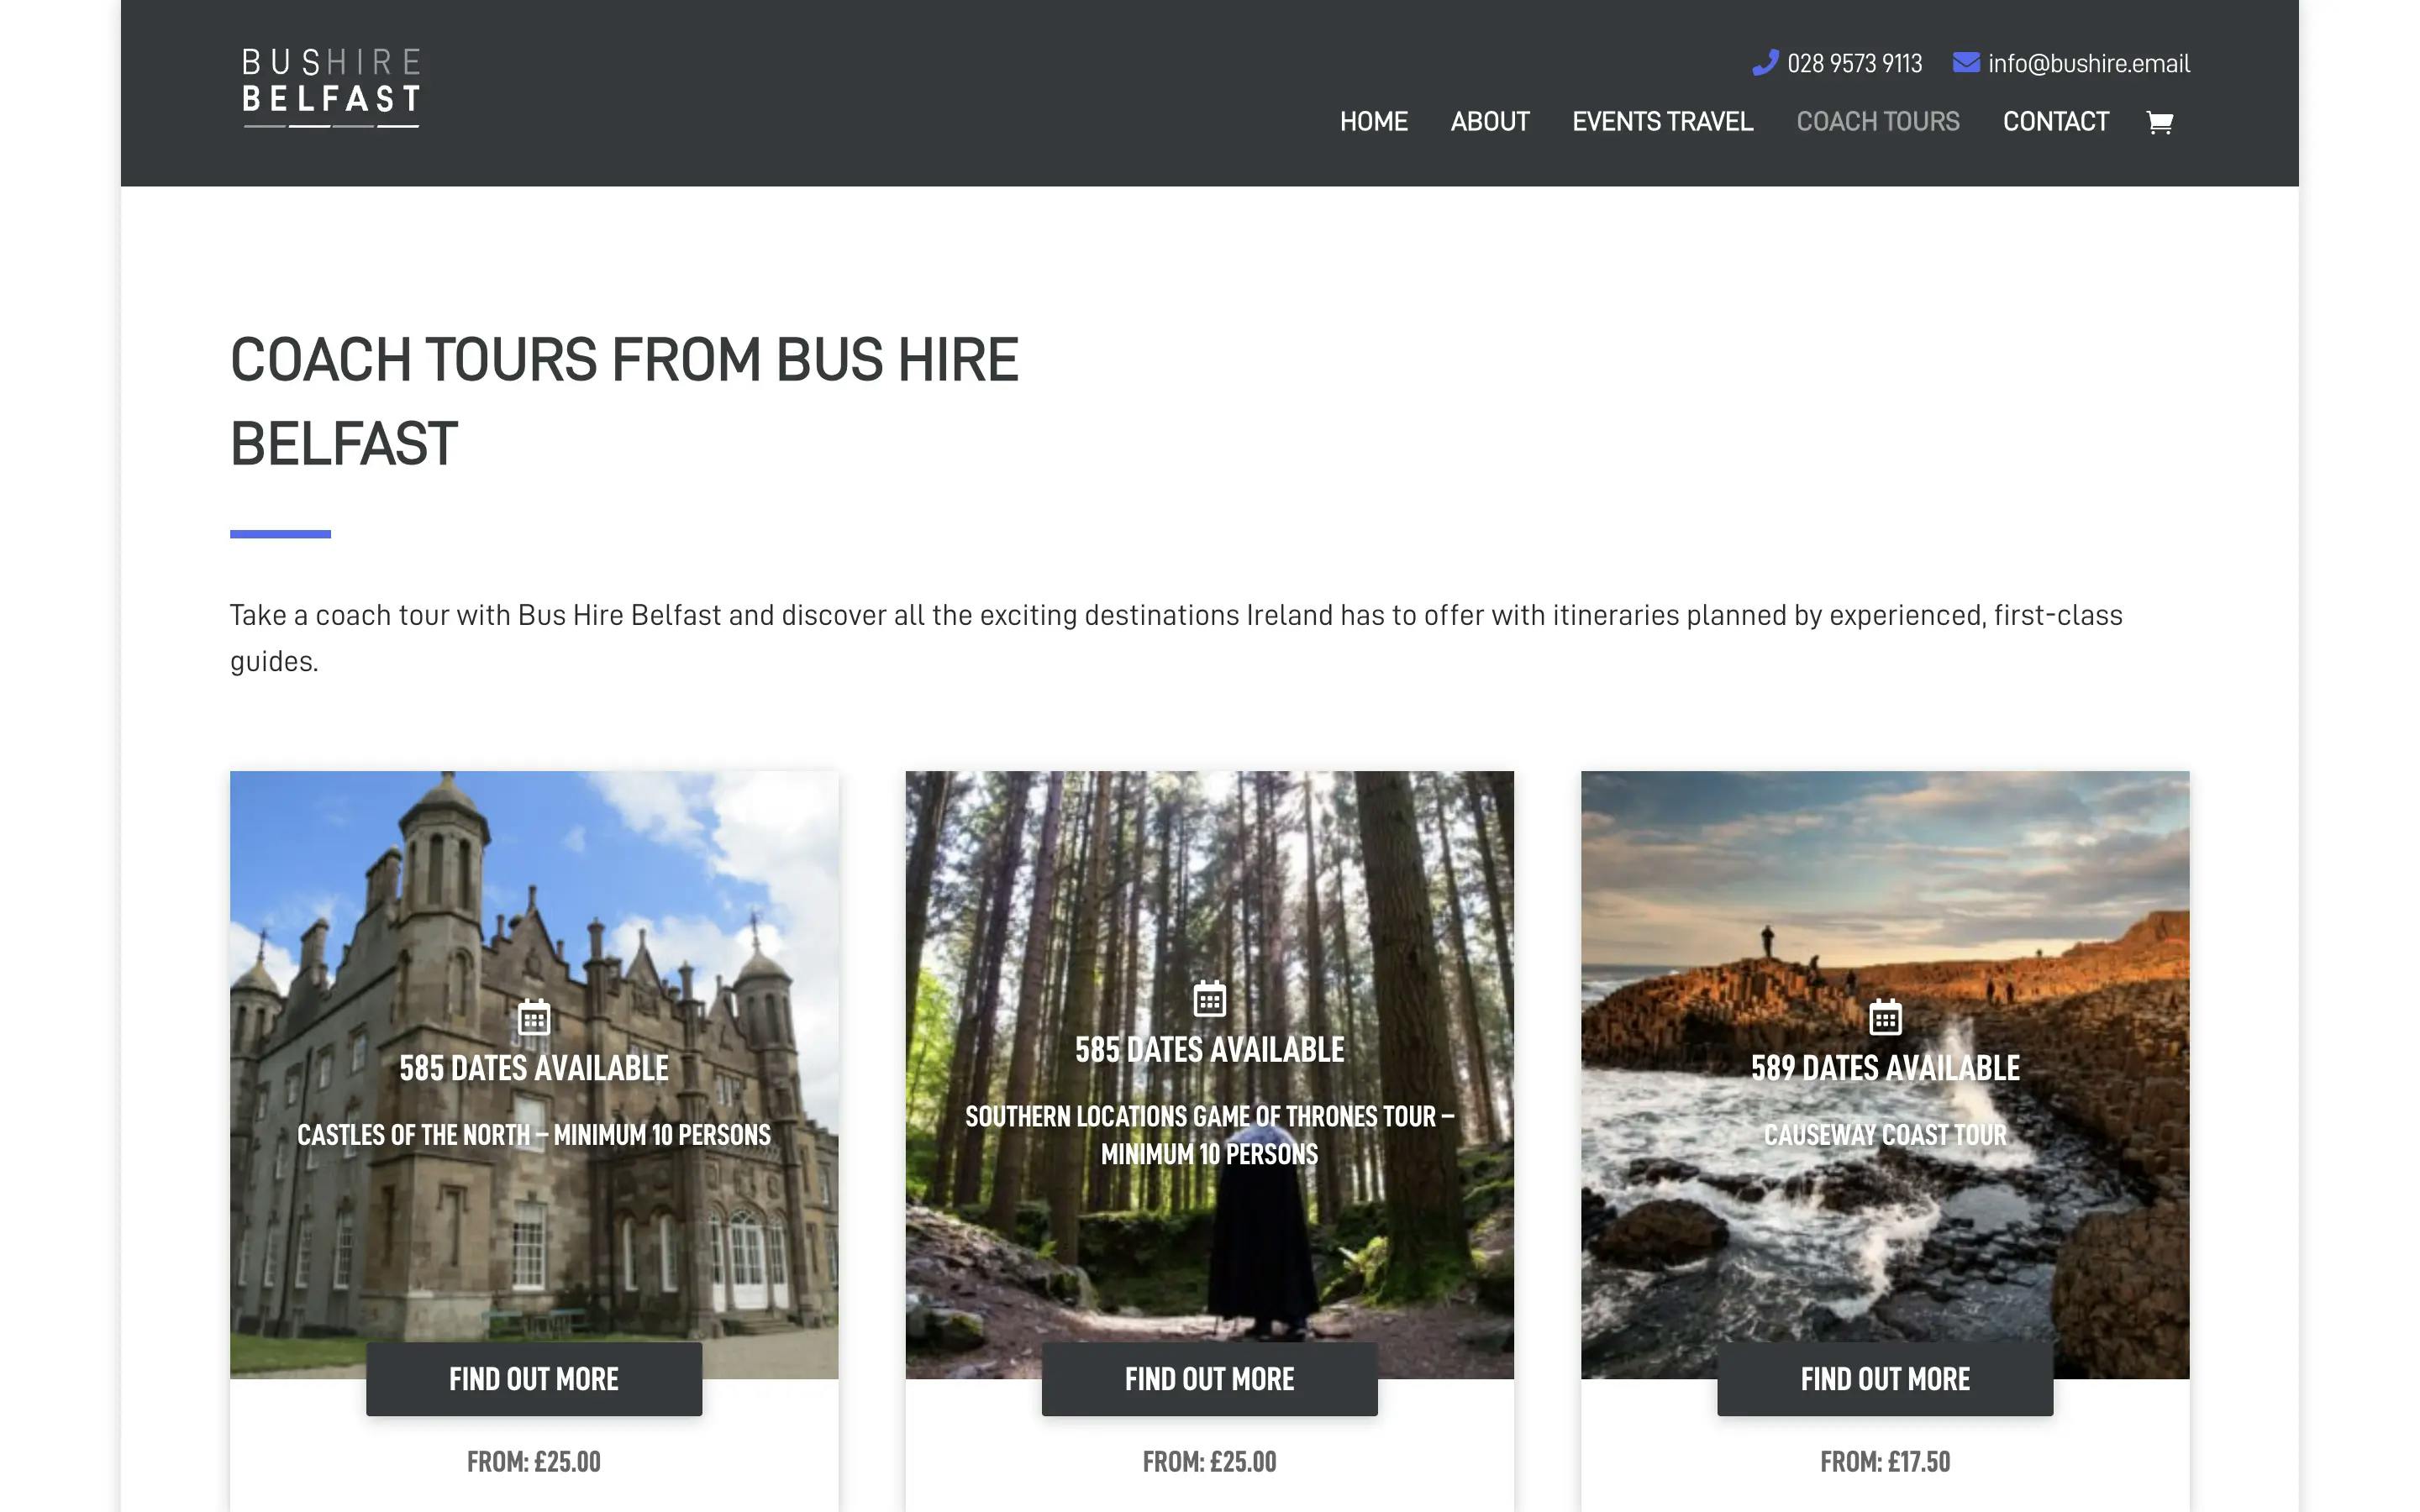 Bus Hire Belfast tours page website design on desktop